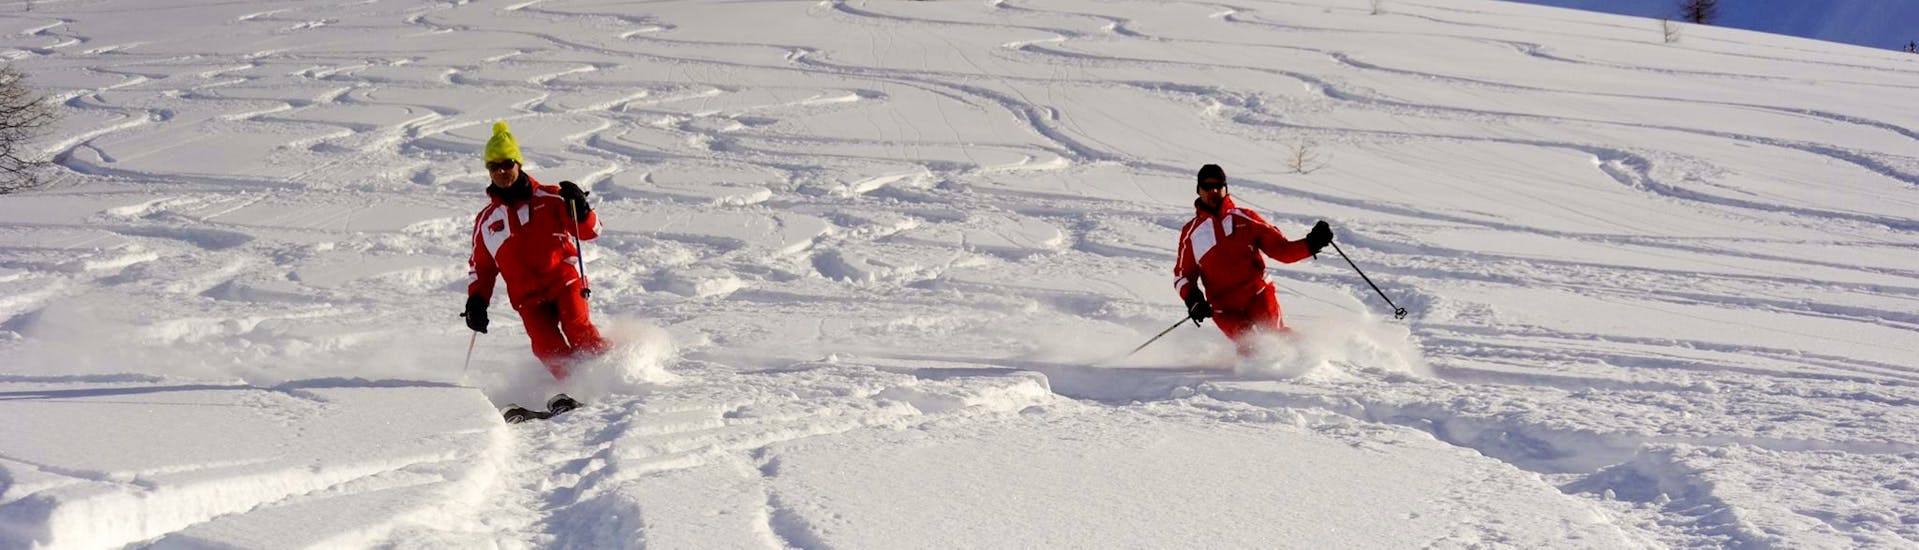 Deux skieurs traversent un champ de poudreuse pendant un cours de ski pour ados et adultes avec l'ESF Ceillac.